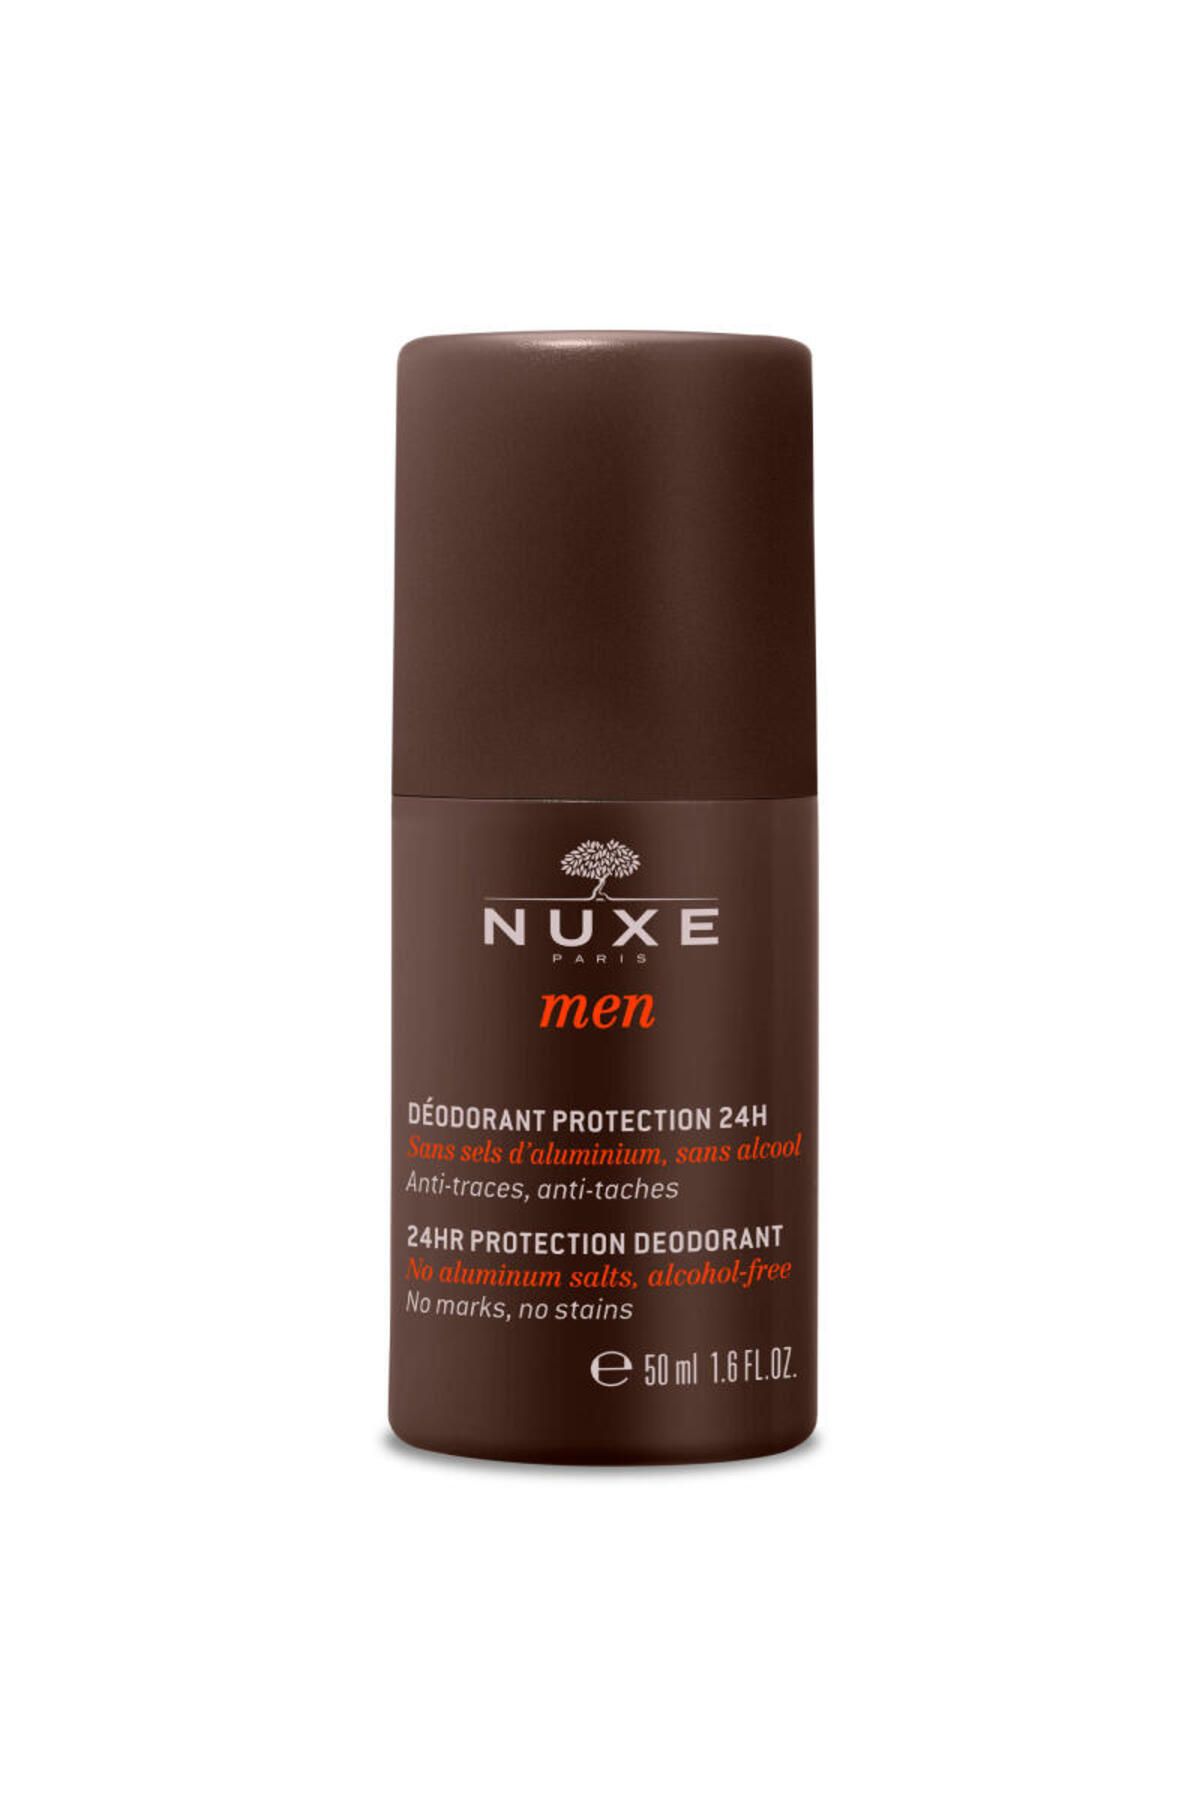 Nuxe Men Deodorant Erkekler İçin 50ml